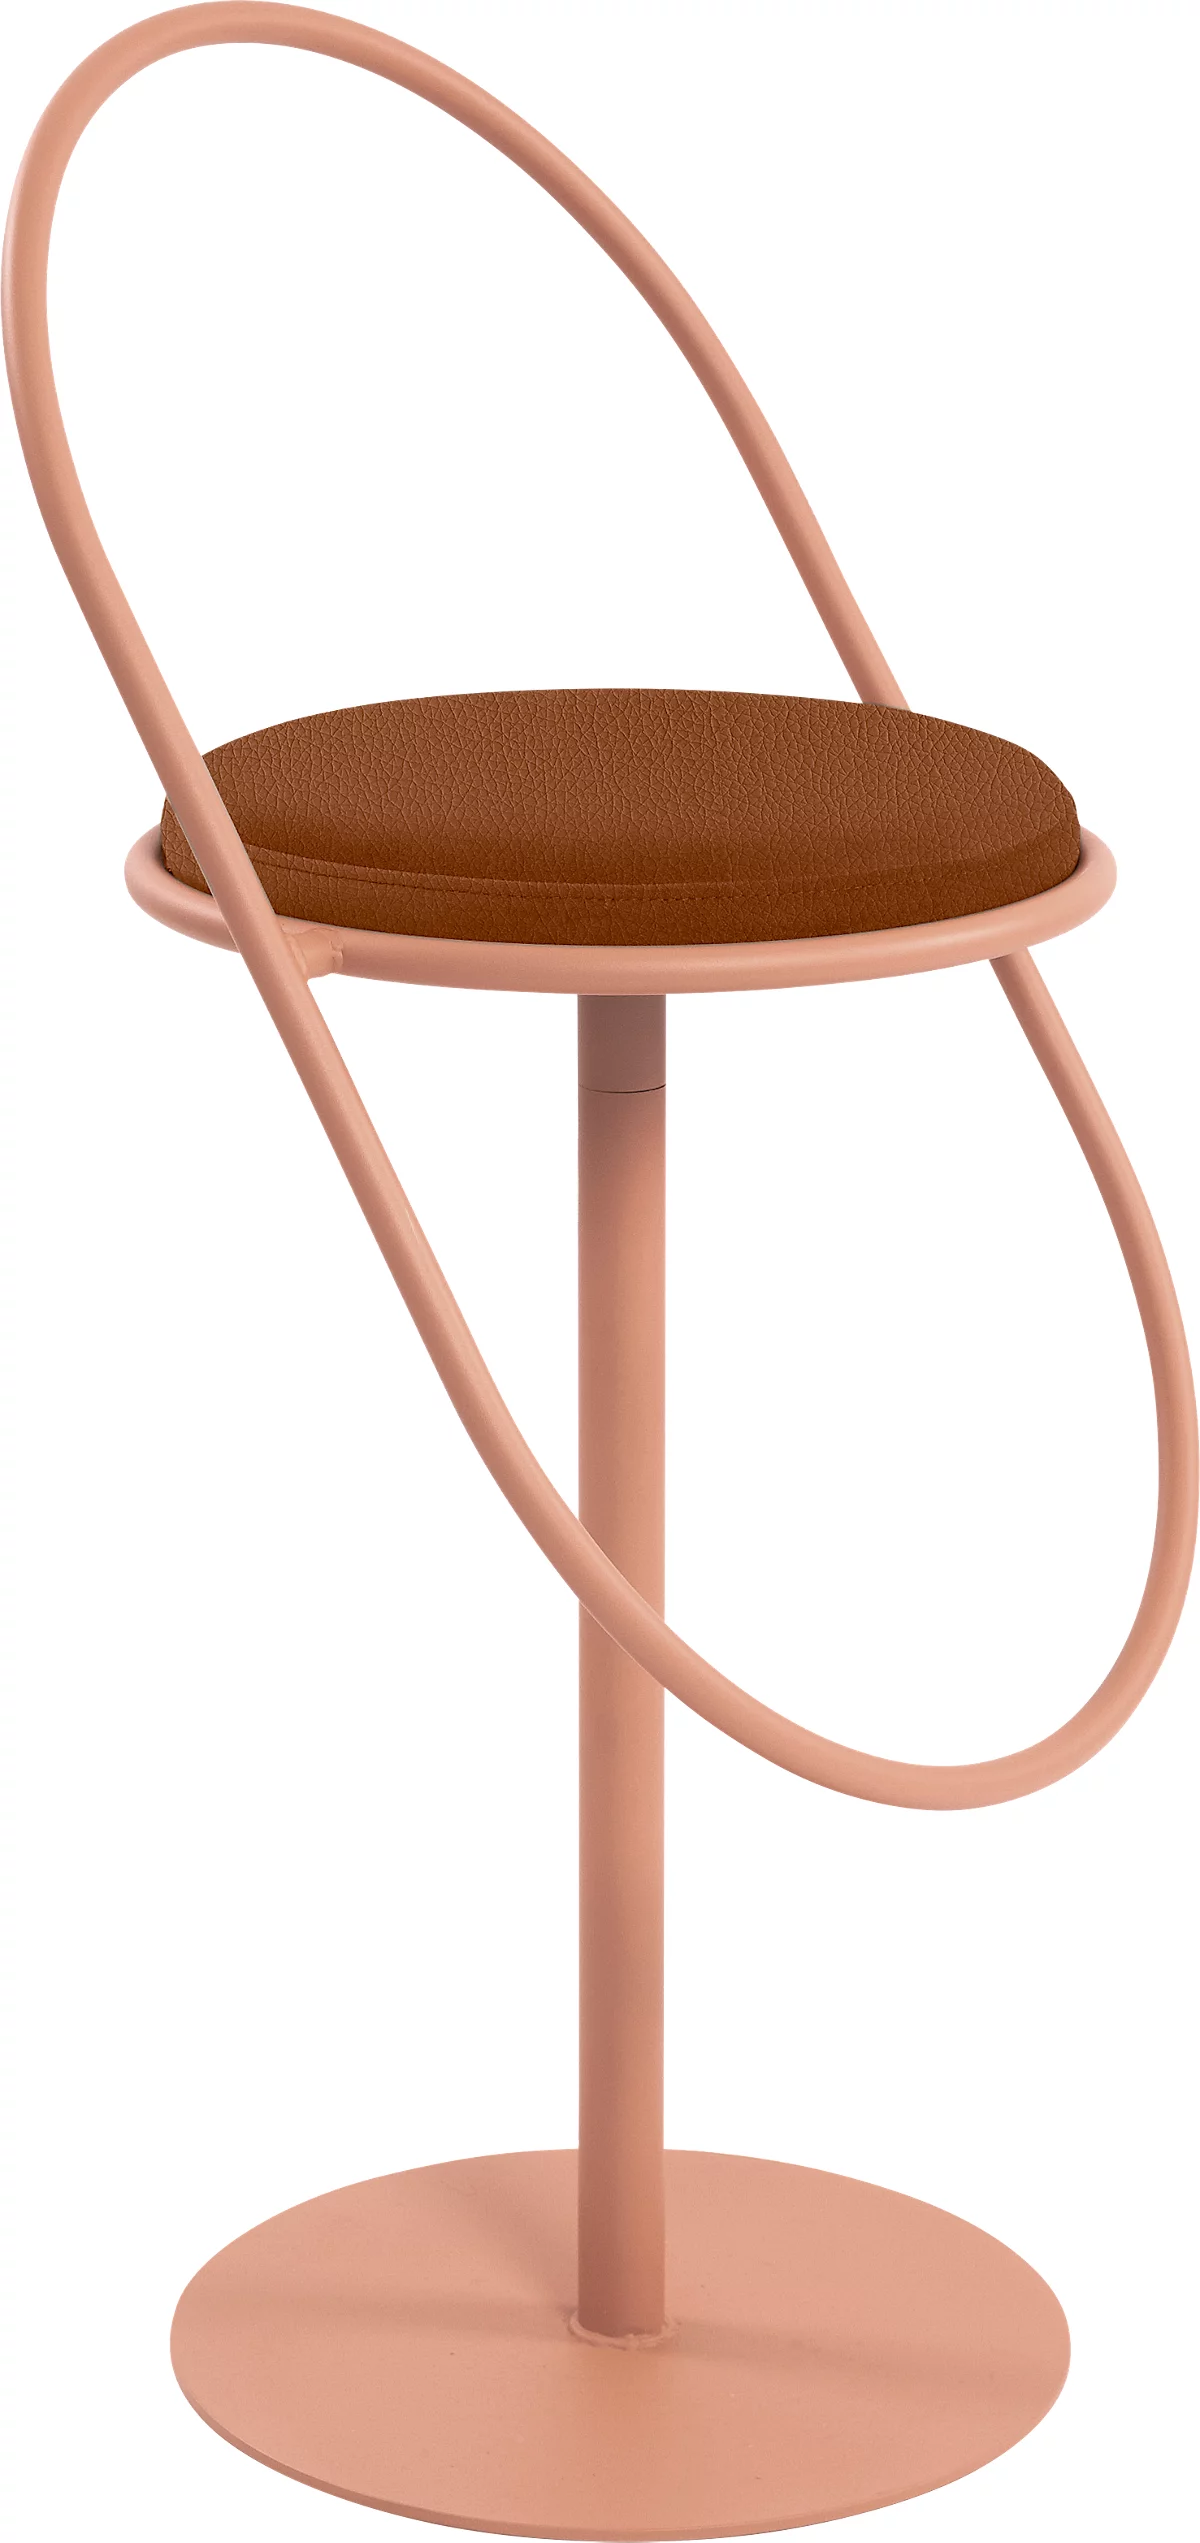 Barhocker Paperflow Saturne, mit Rückenlehne, Sitzhöhe 765 mm, gepolstert, zu 100 % recycelbar, Kunstlederbezug rostfarben, Gestell rosa